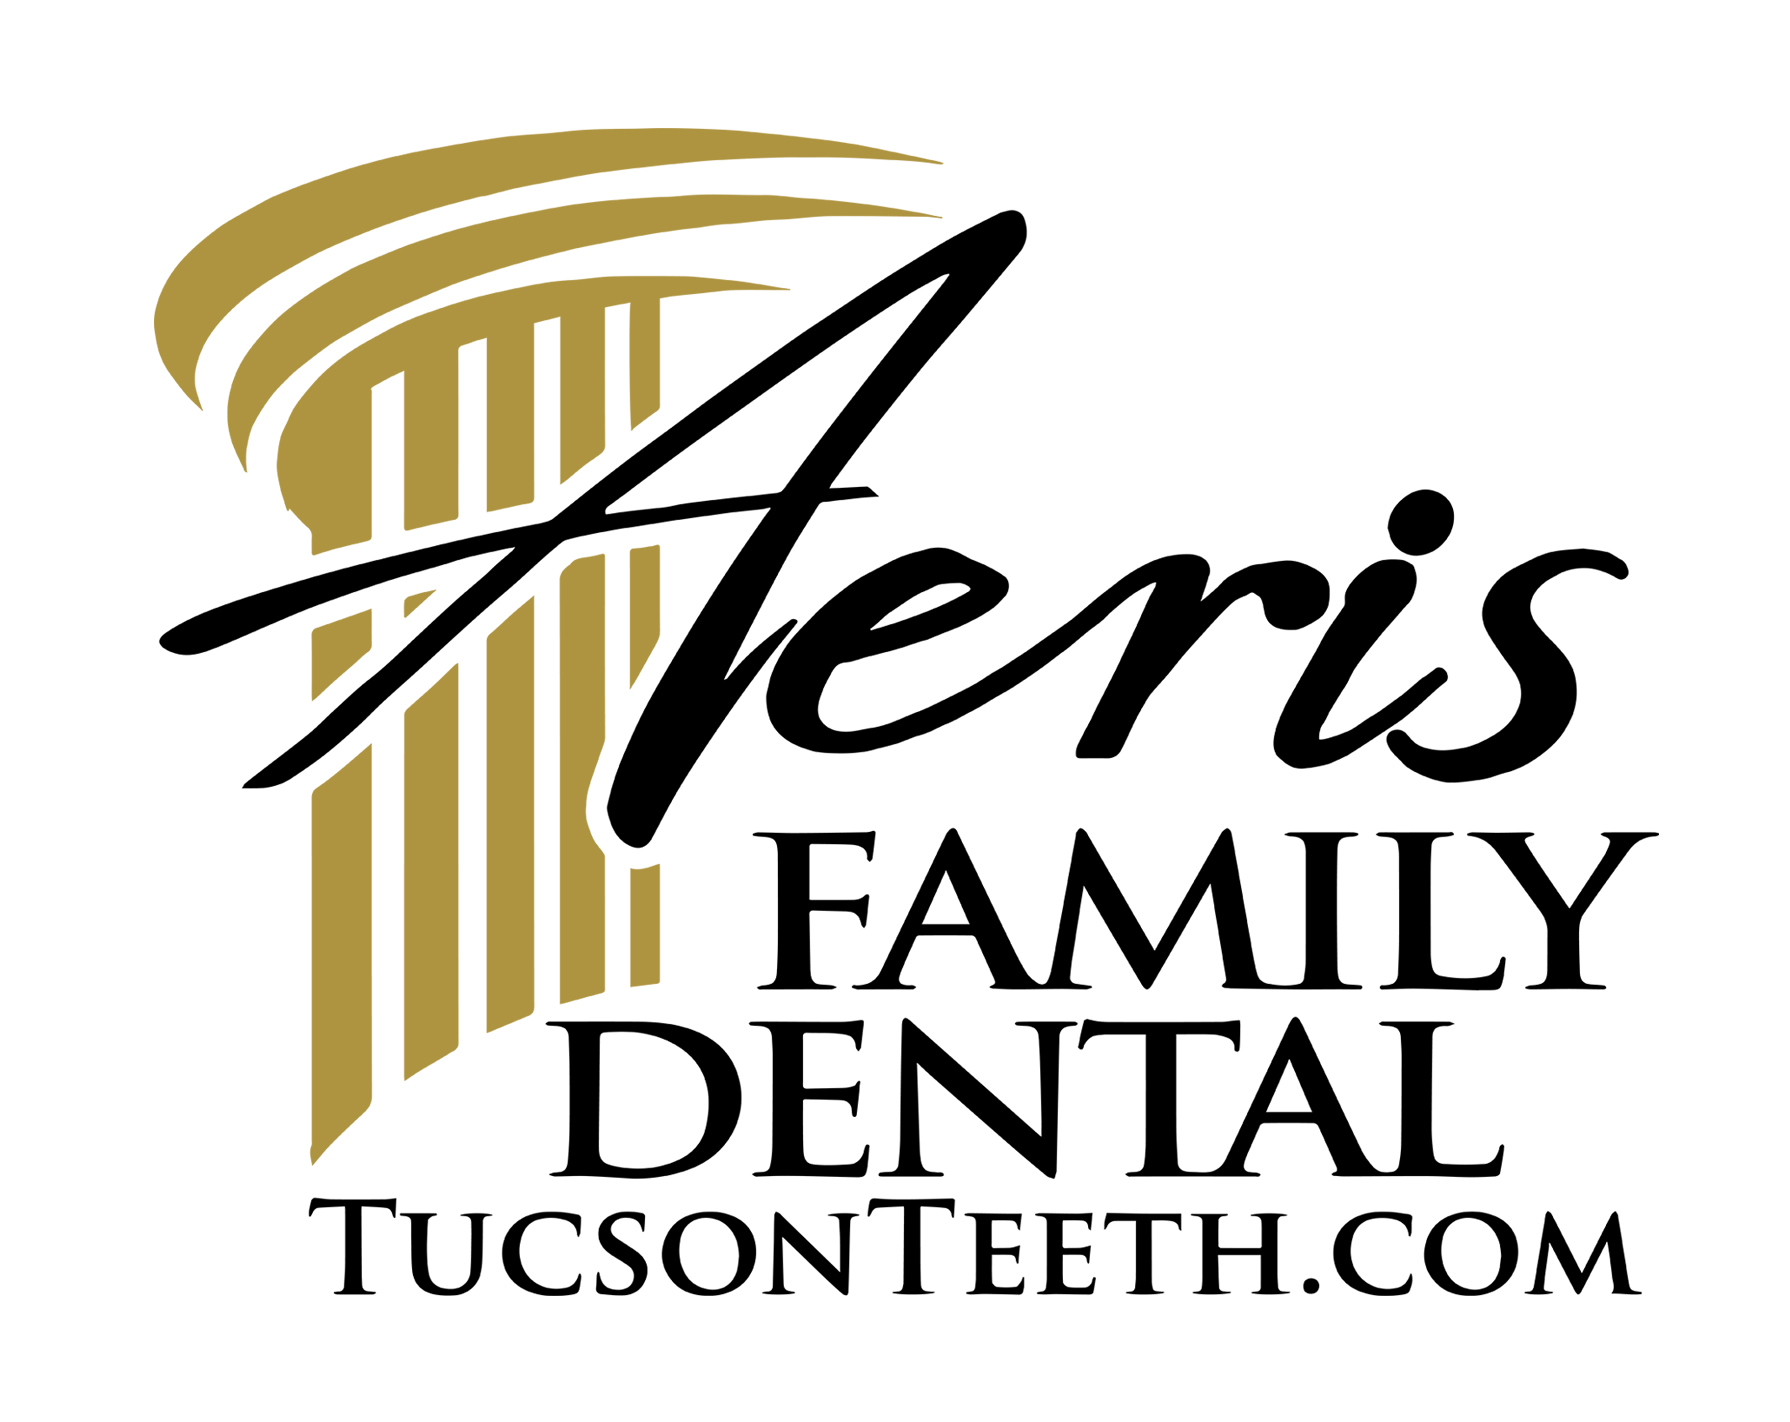 Aeris Family Dental